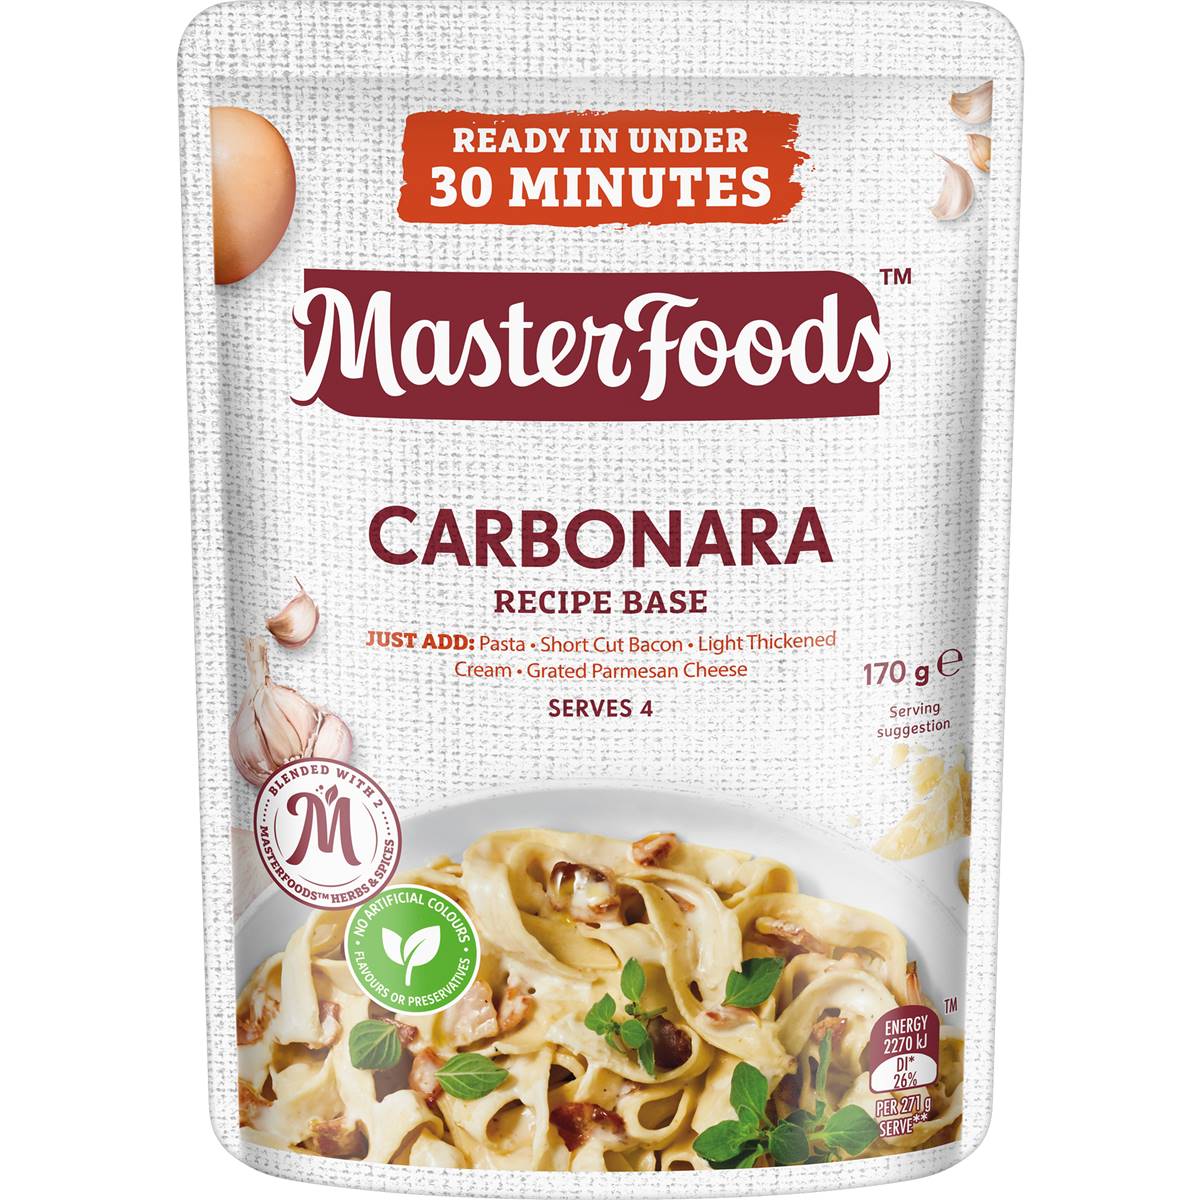 Masterfoods Carbonara Recipe Base